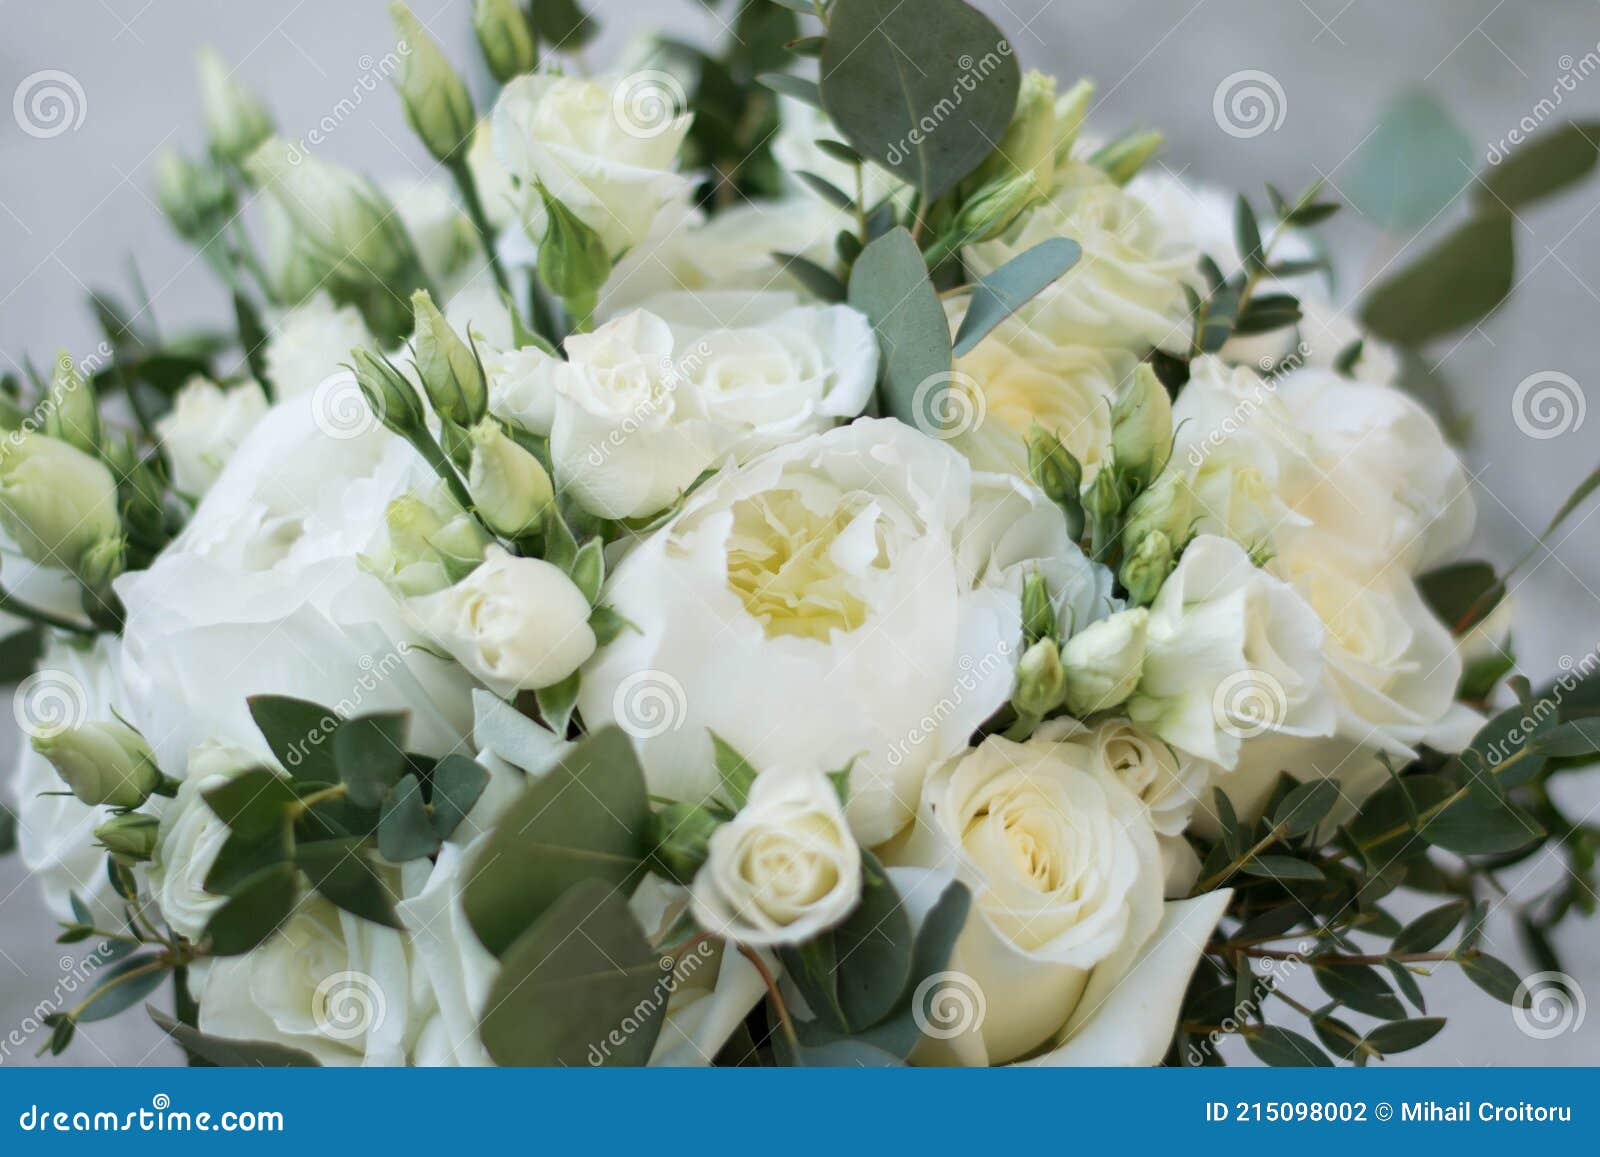 Bouquet De Casamentos Brancos Composto De Rosas De Pénia Lisianthus Freesia  E Eucalifo. Fechar Foto de Stock - Imagem de amor, mulher: 215098002